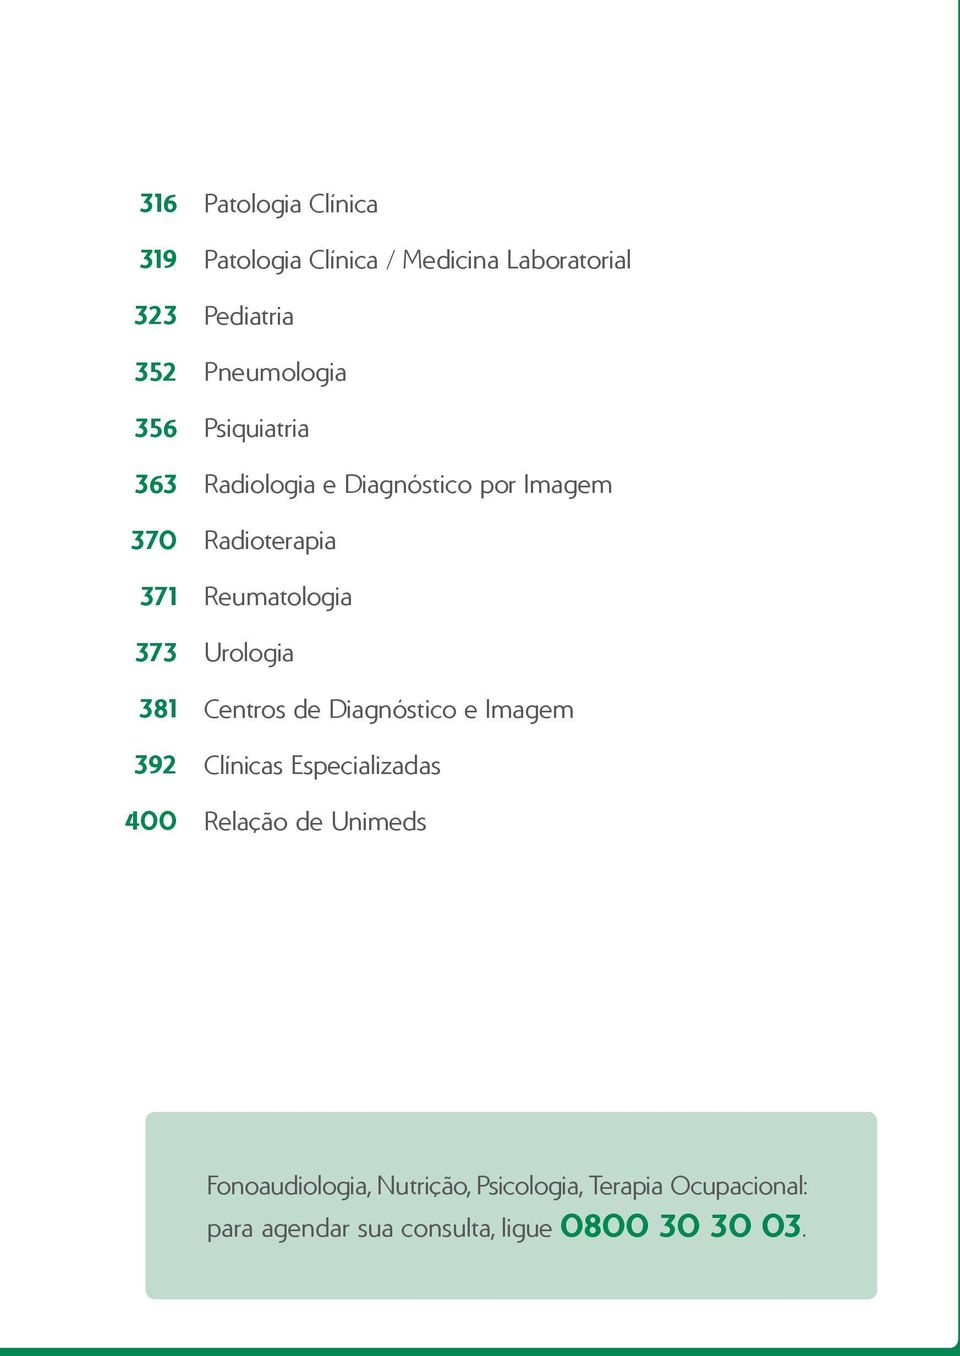 Reumatologia Urologia s de Diagnóstico e Imagem Clínicas Especializadas Relação de Unimeds